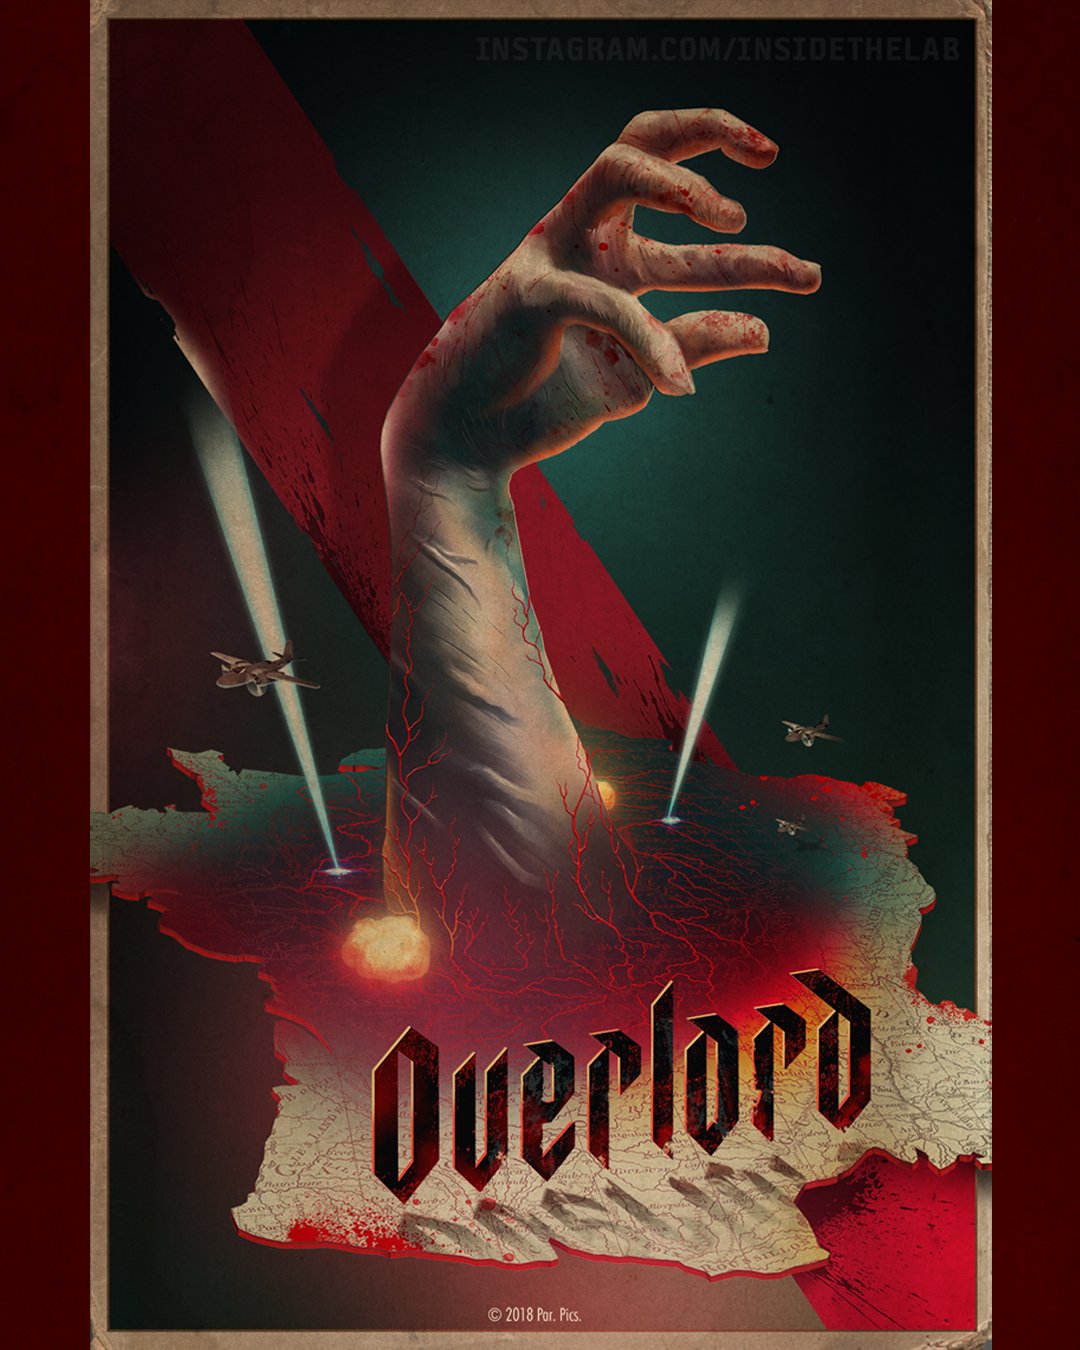 Quarta temporada de Overlord recebe novo trailer e data de estreia -  NerdBunker